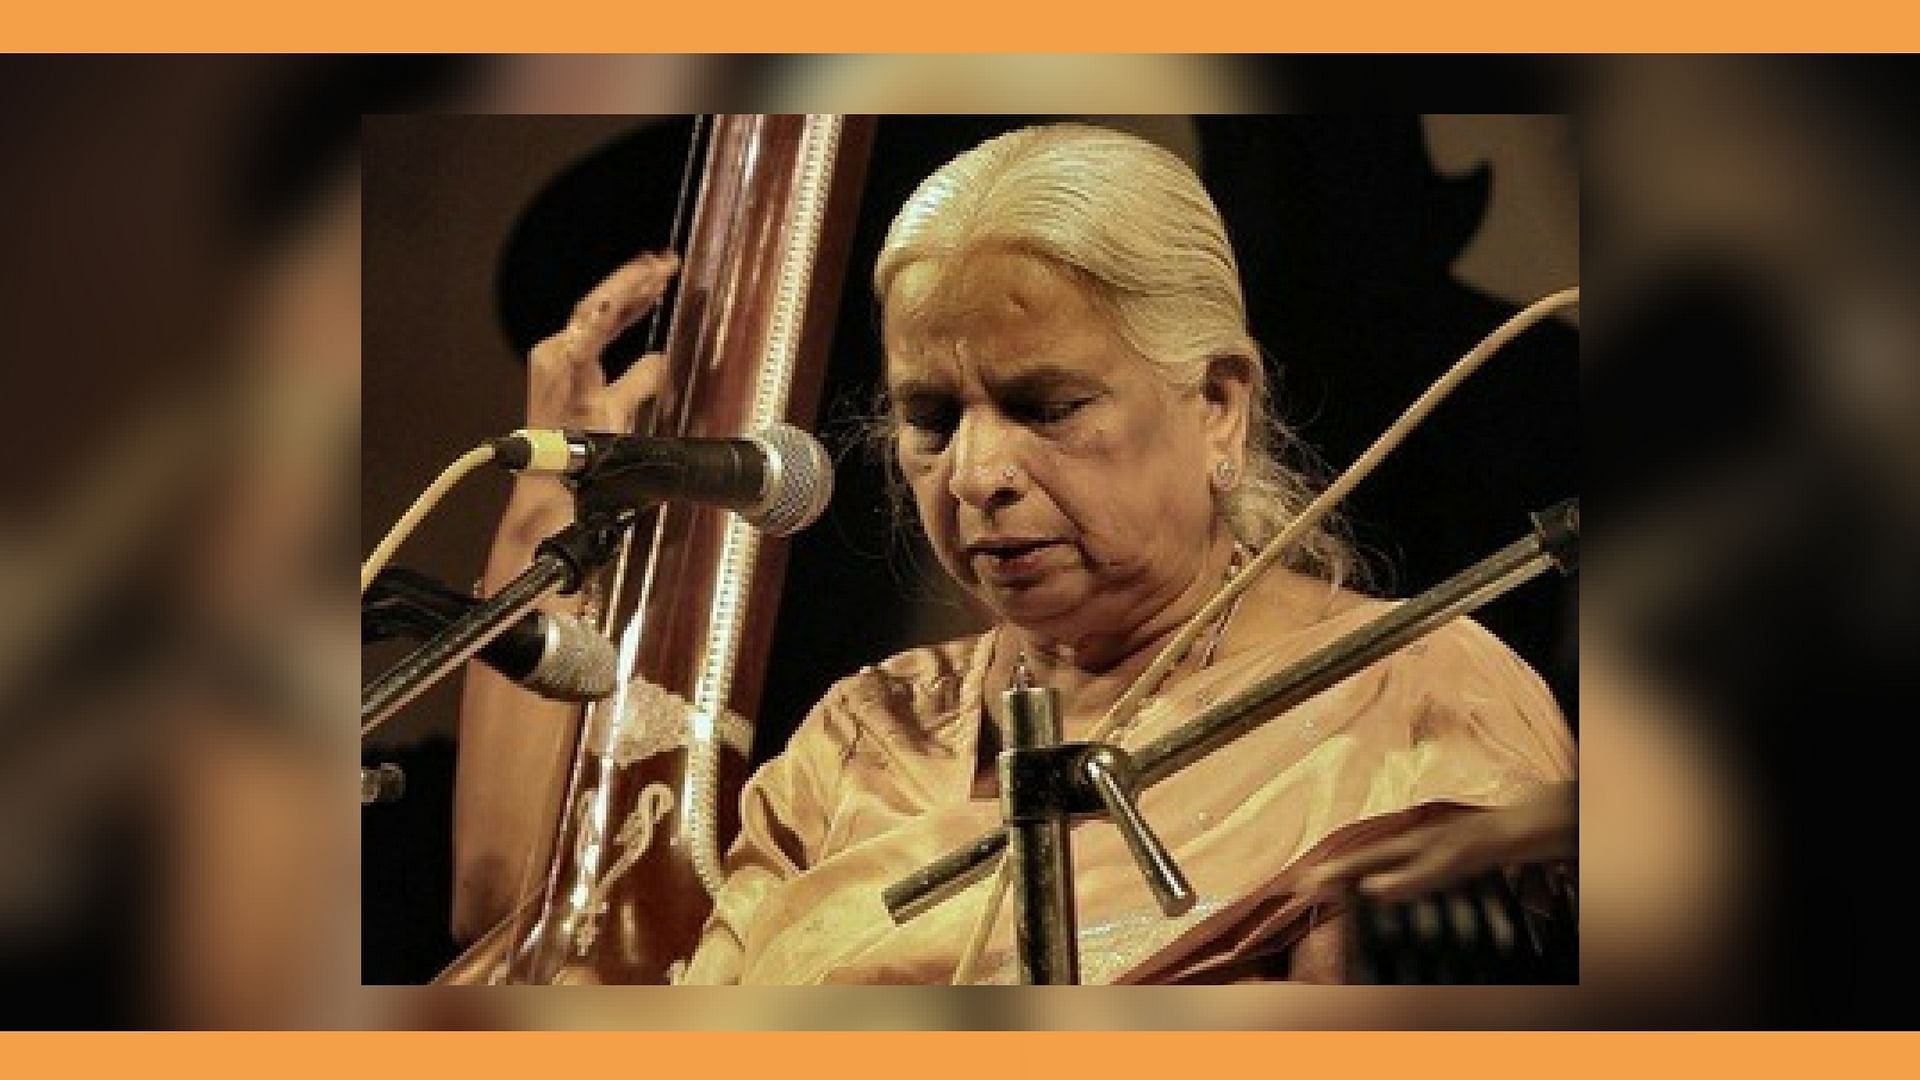 अपने बेहतरीन गायन के लिए गिरिजा देवी को भारत सरकार ने पद्मश्री 1972 पद्म भूषण 1989 पद्म विभूषण 2016 से सम्मानित किया.